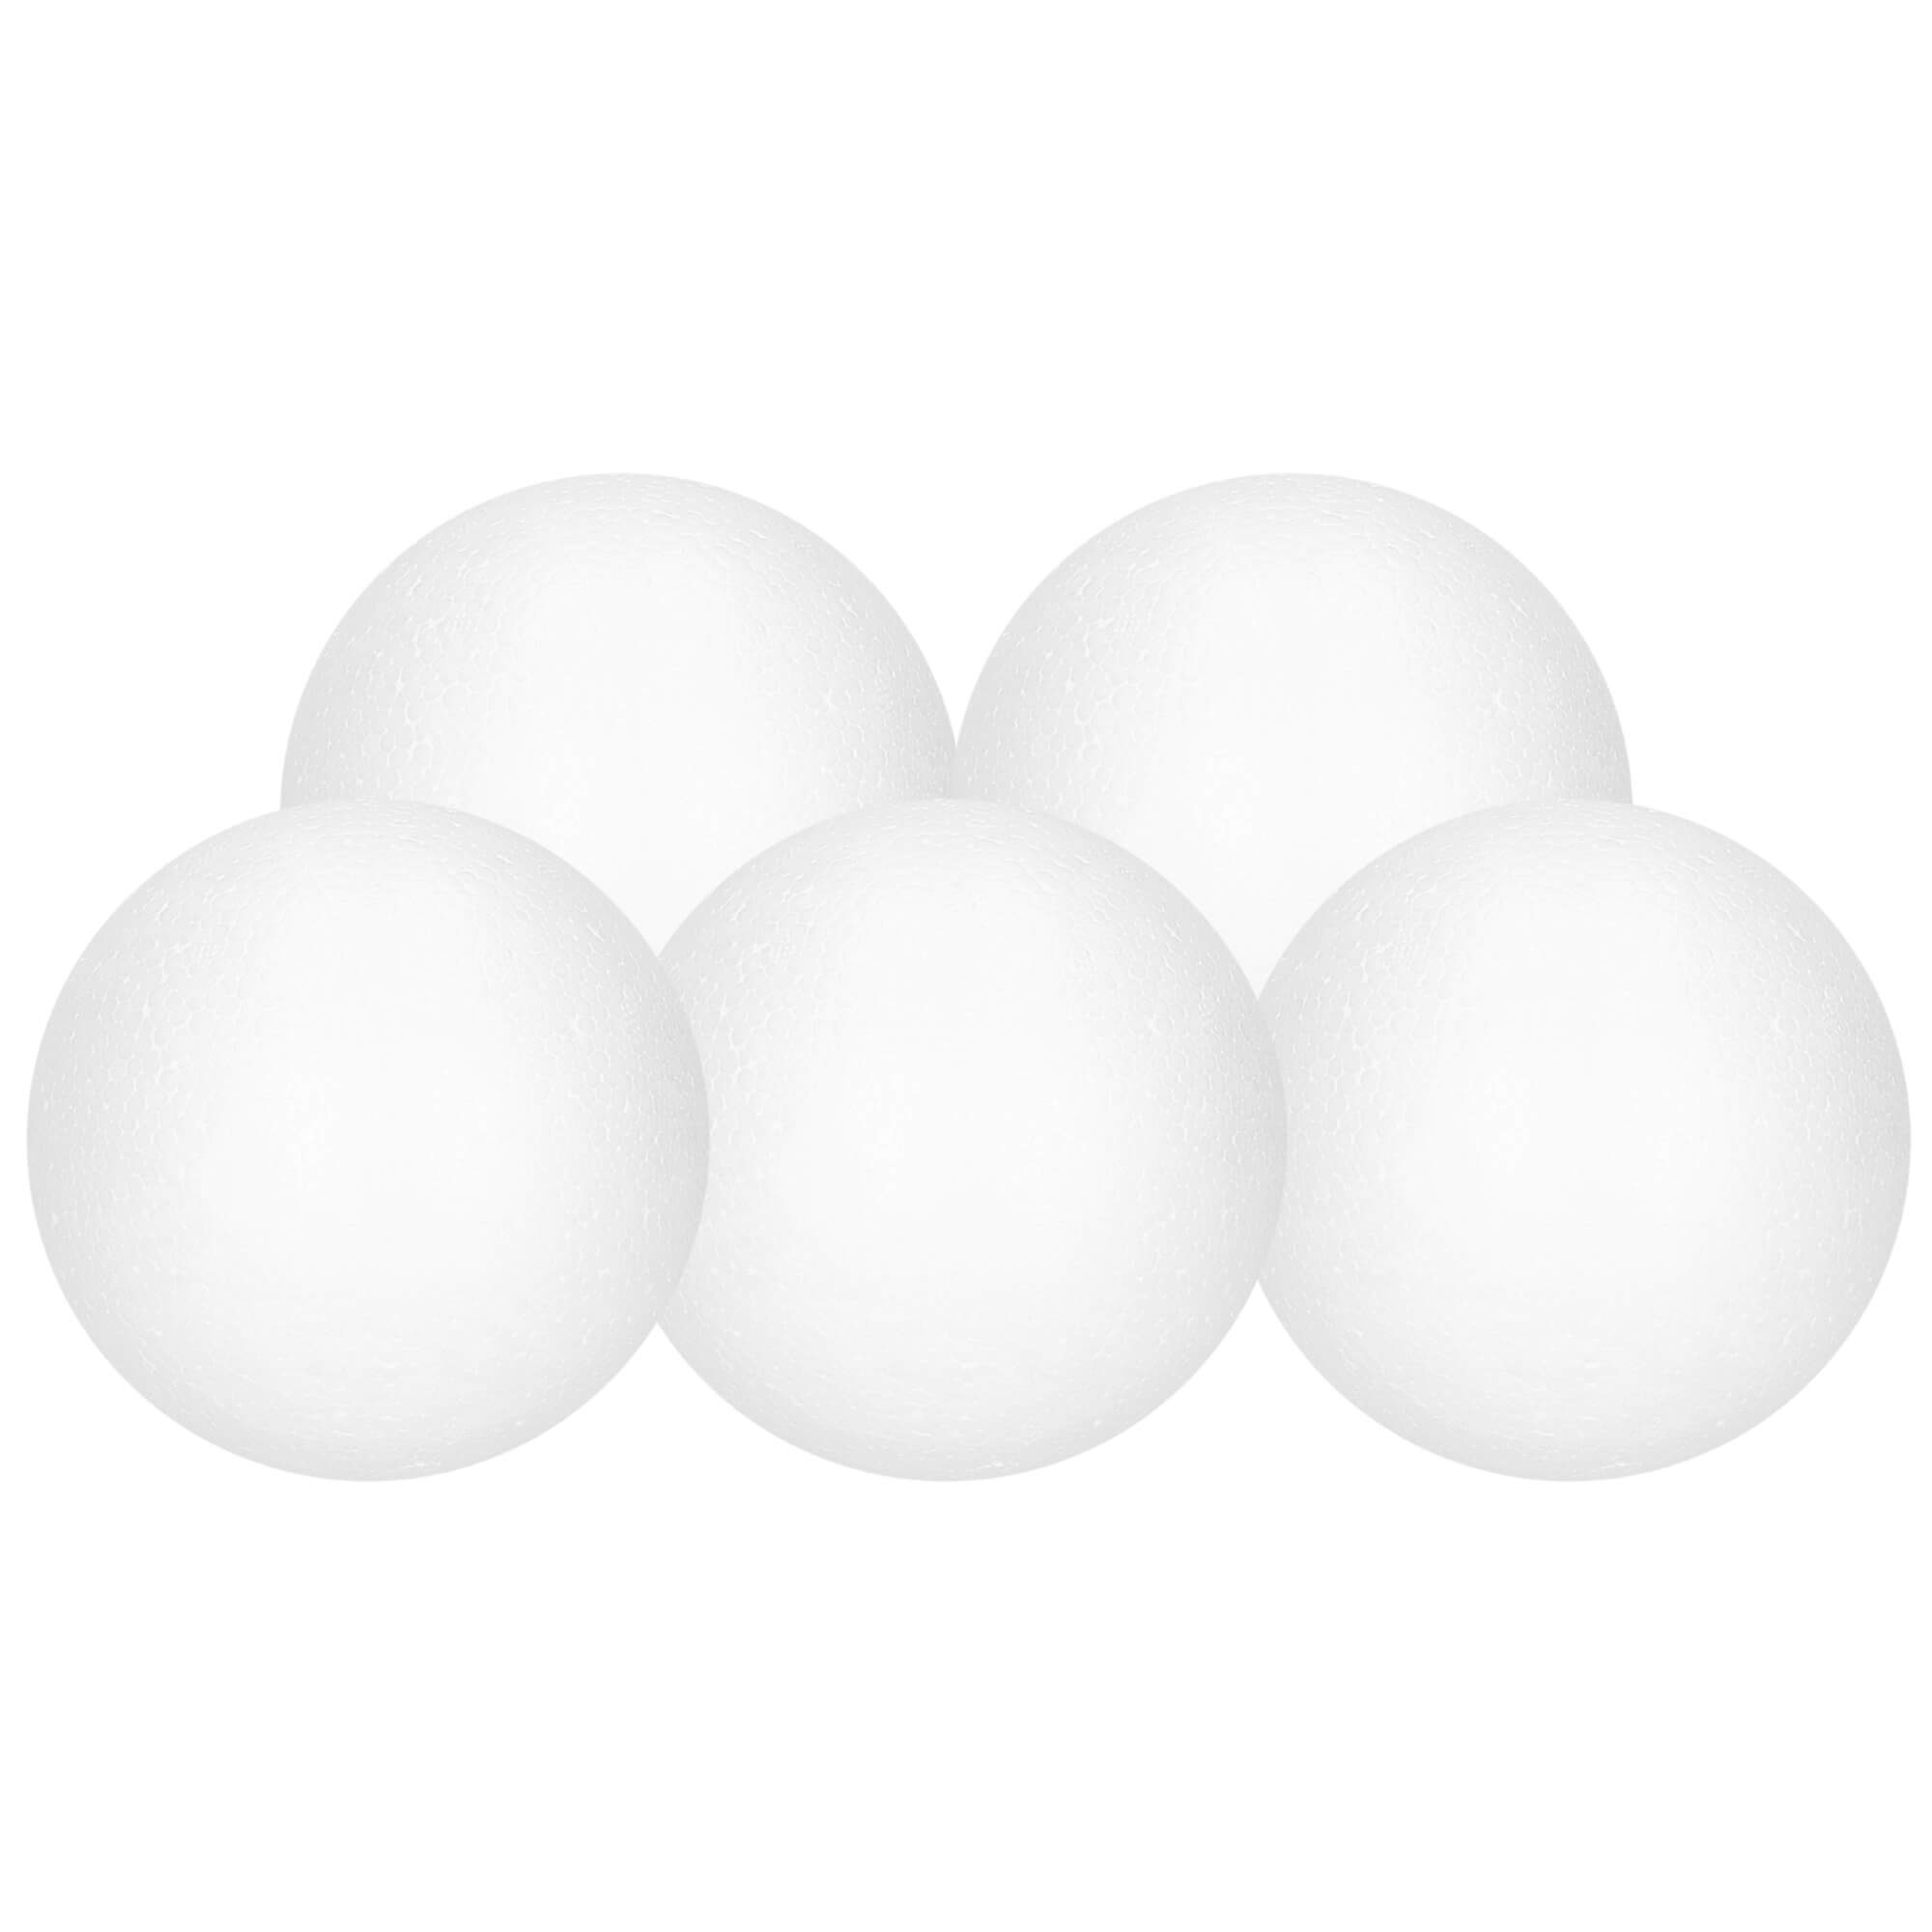 Мячи для настольного тенниса белые. Пластиковые шарики для пинг понга. Мяч для пинг понга белый. Мяч для настольного тенниса белый. Мяч для тенниса белый.